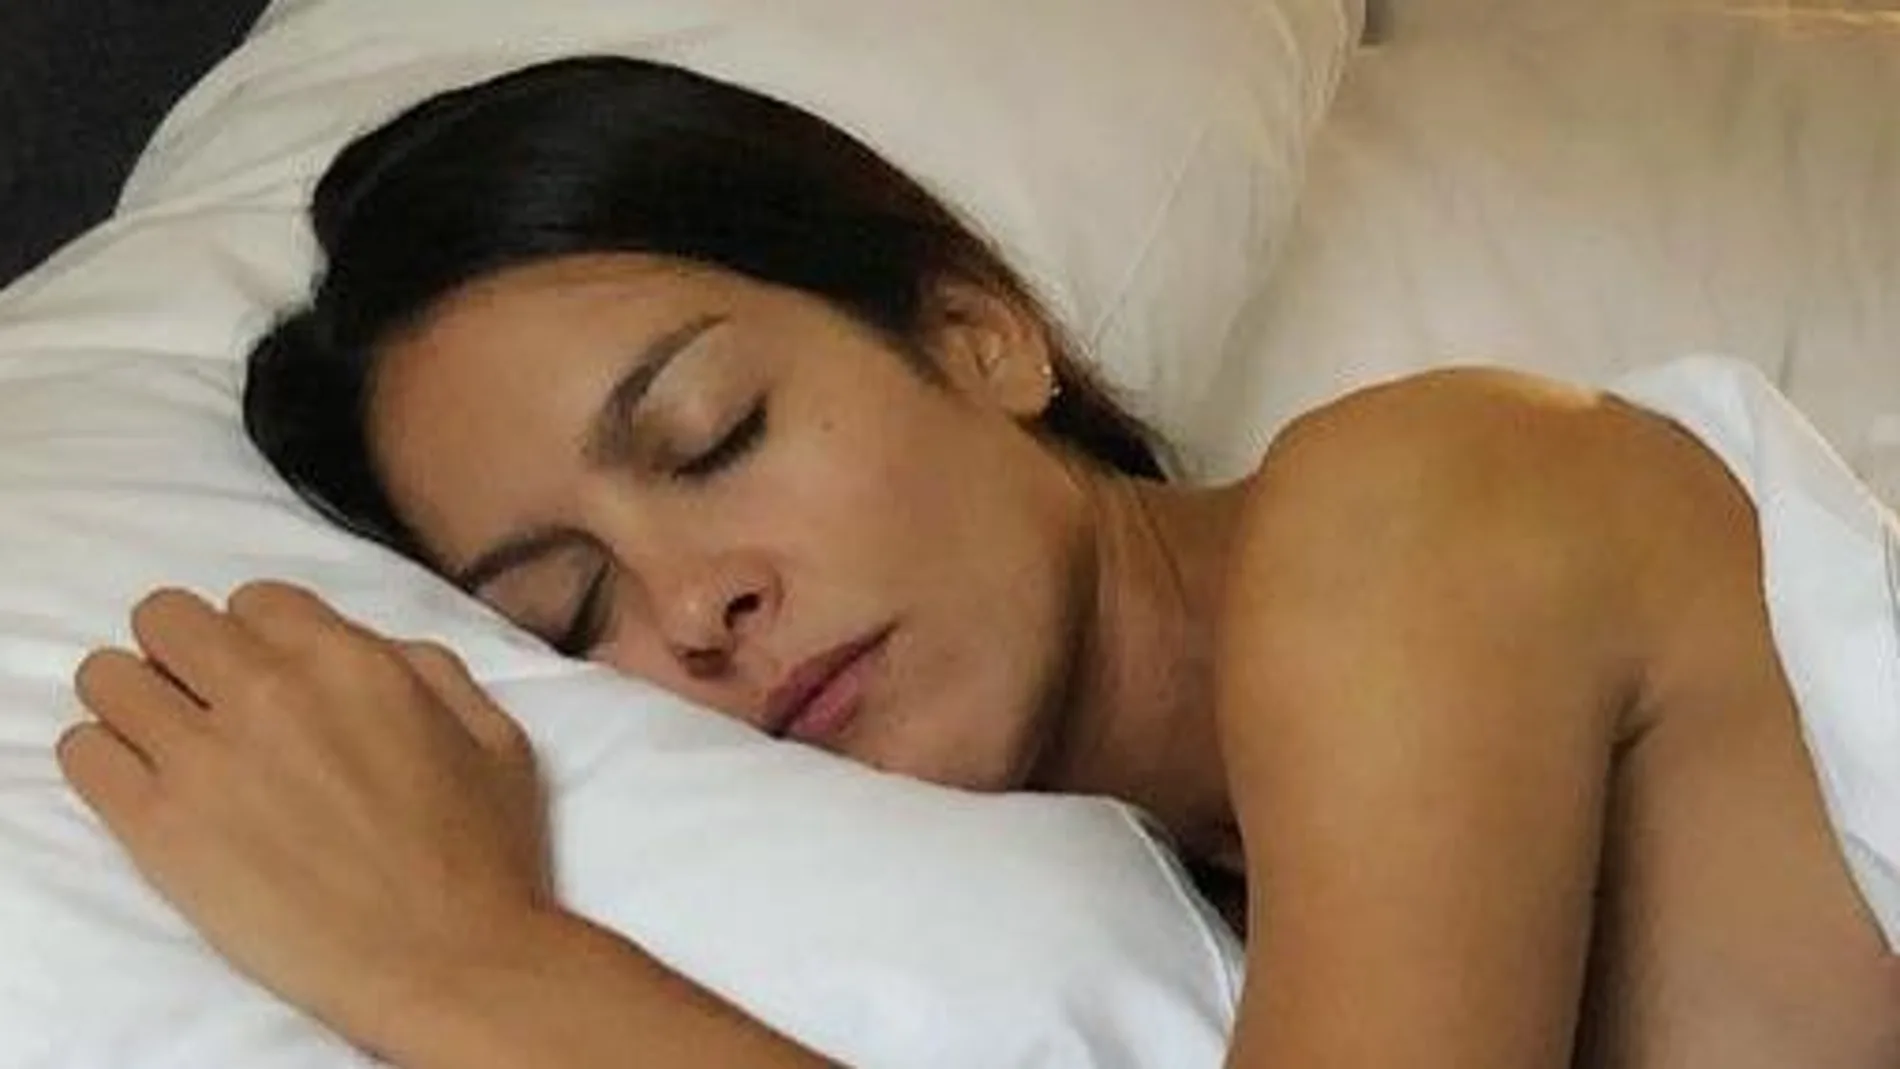 Lorena Castell nos muestra cómo duerme la siesta: completamente desnuda